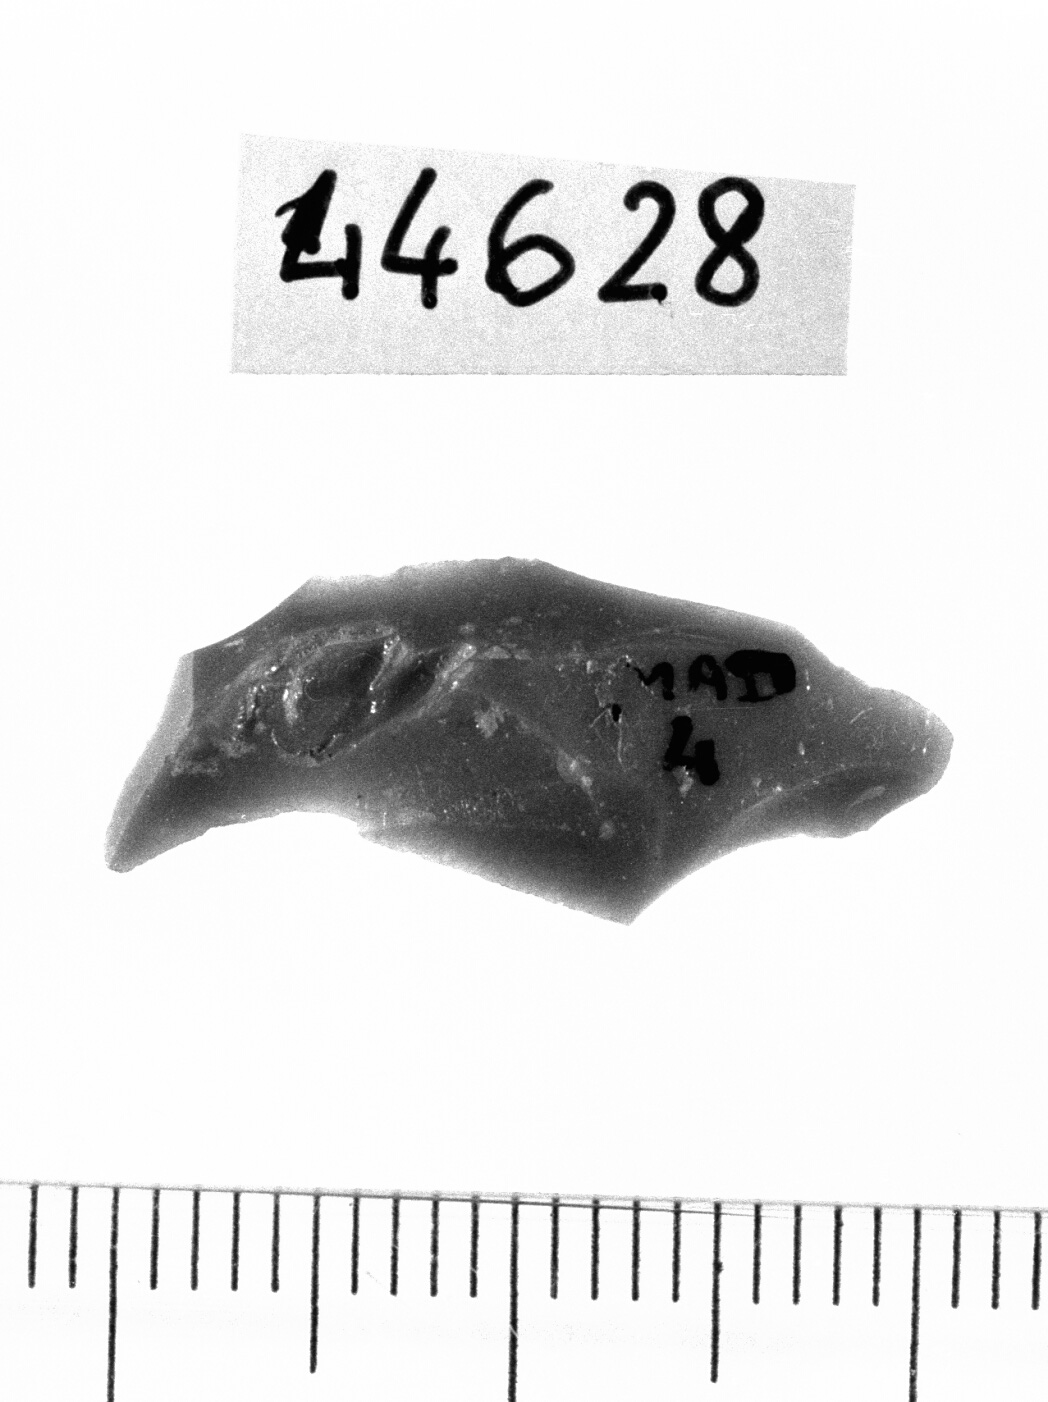 microbulino (Neolitico)